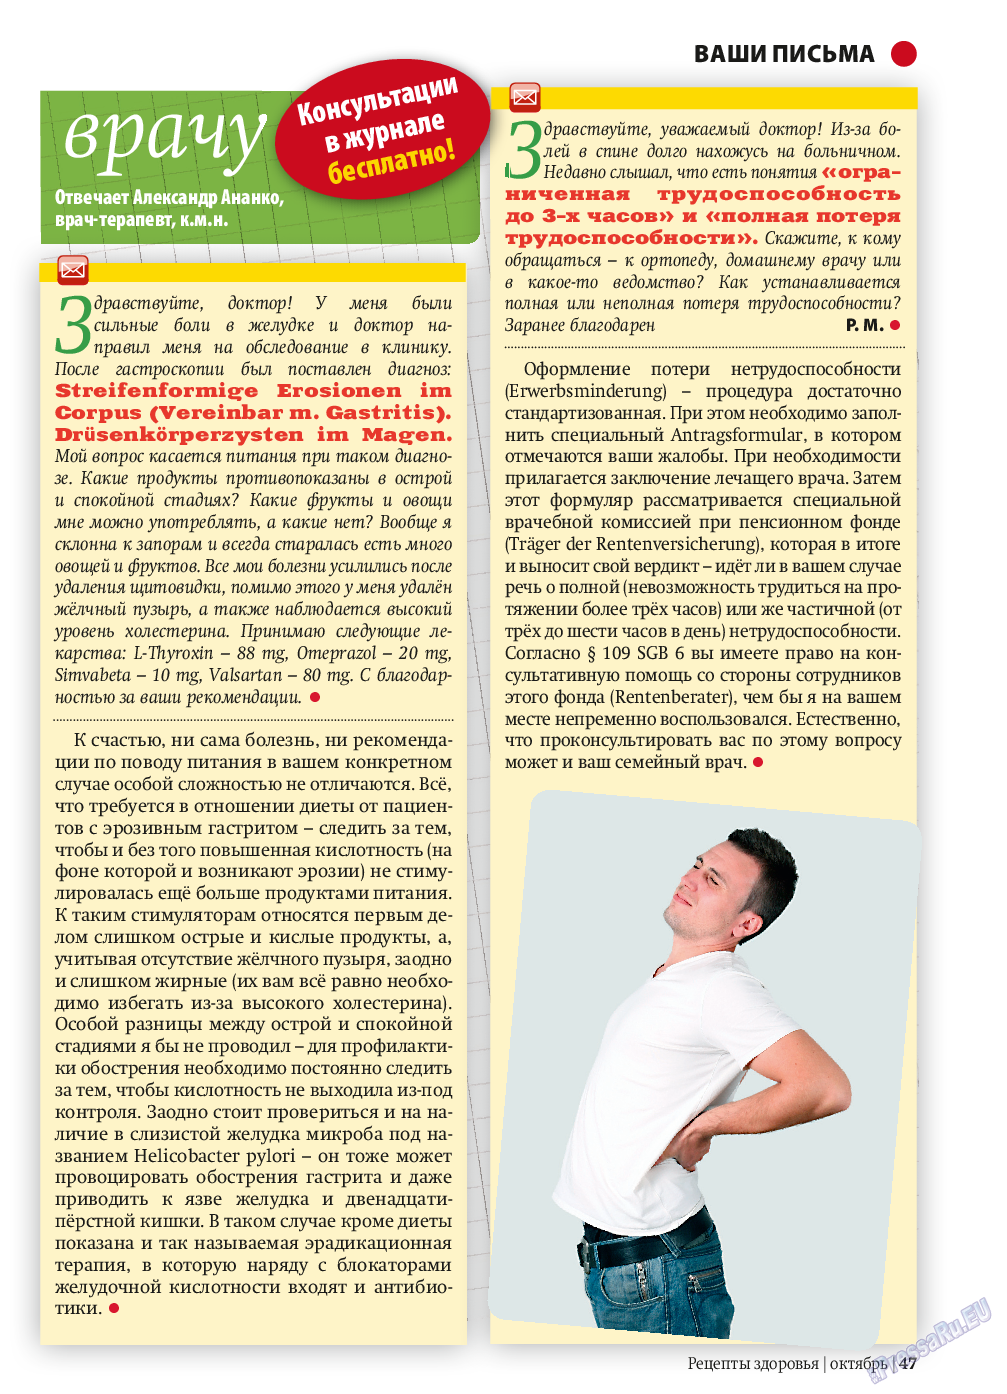 Рецепты здоровья (журнал). 2013 год, номер 10, стр. 47